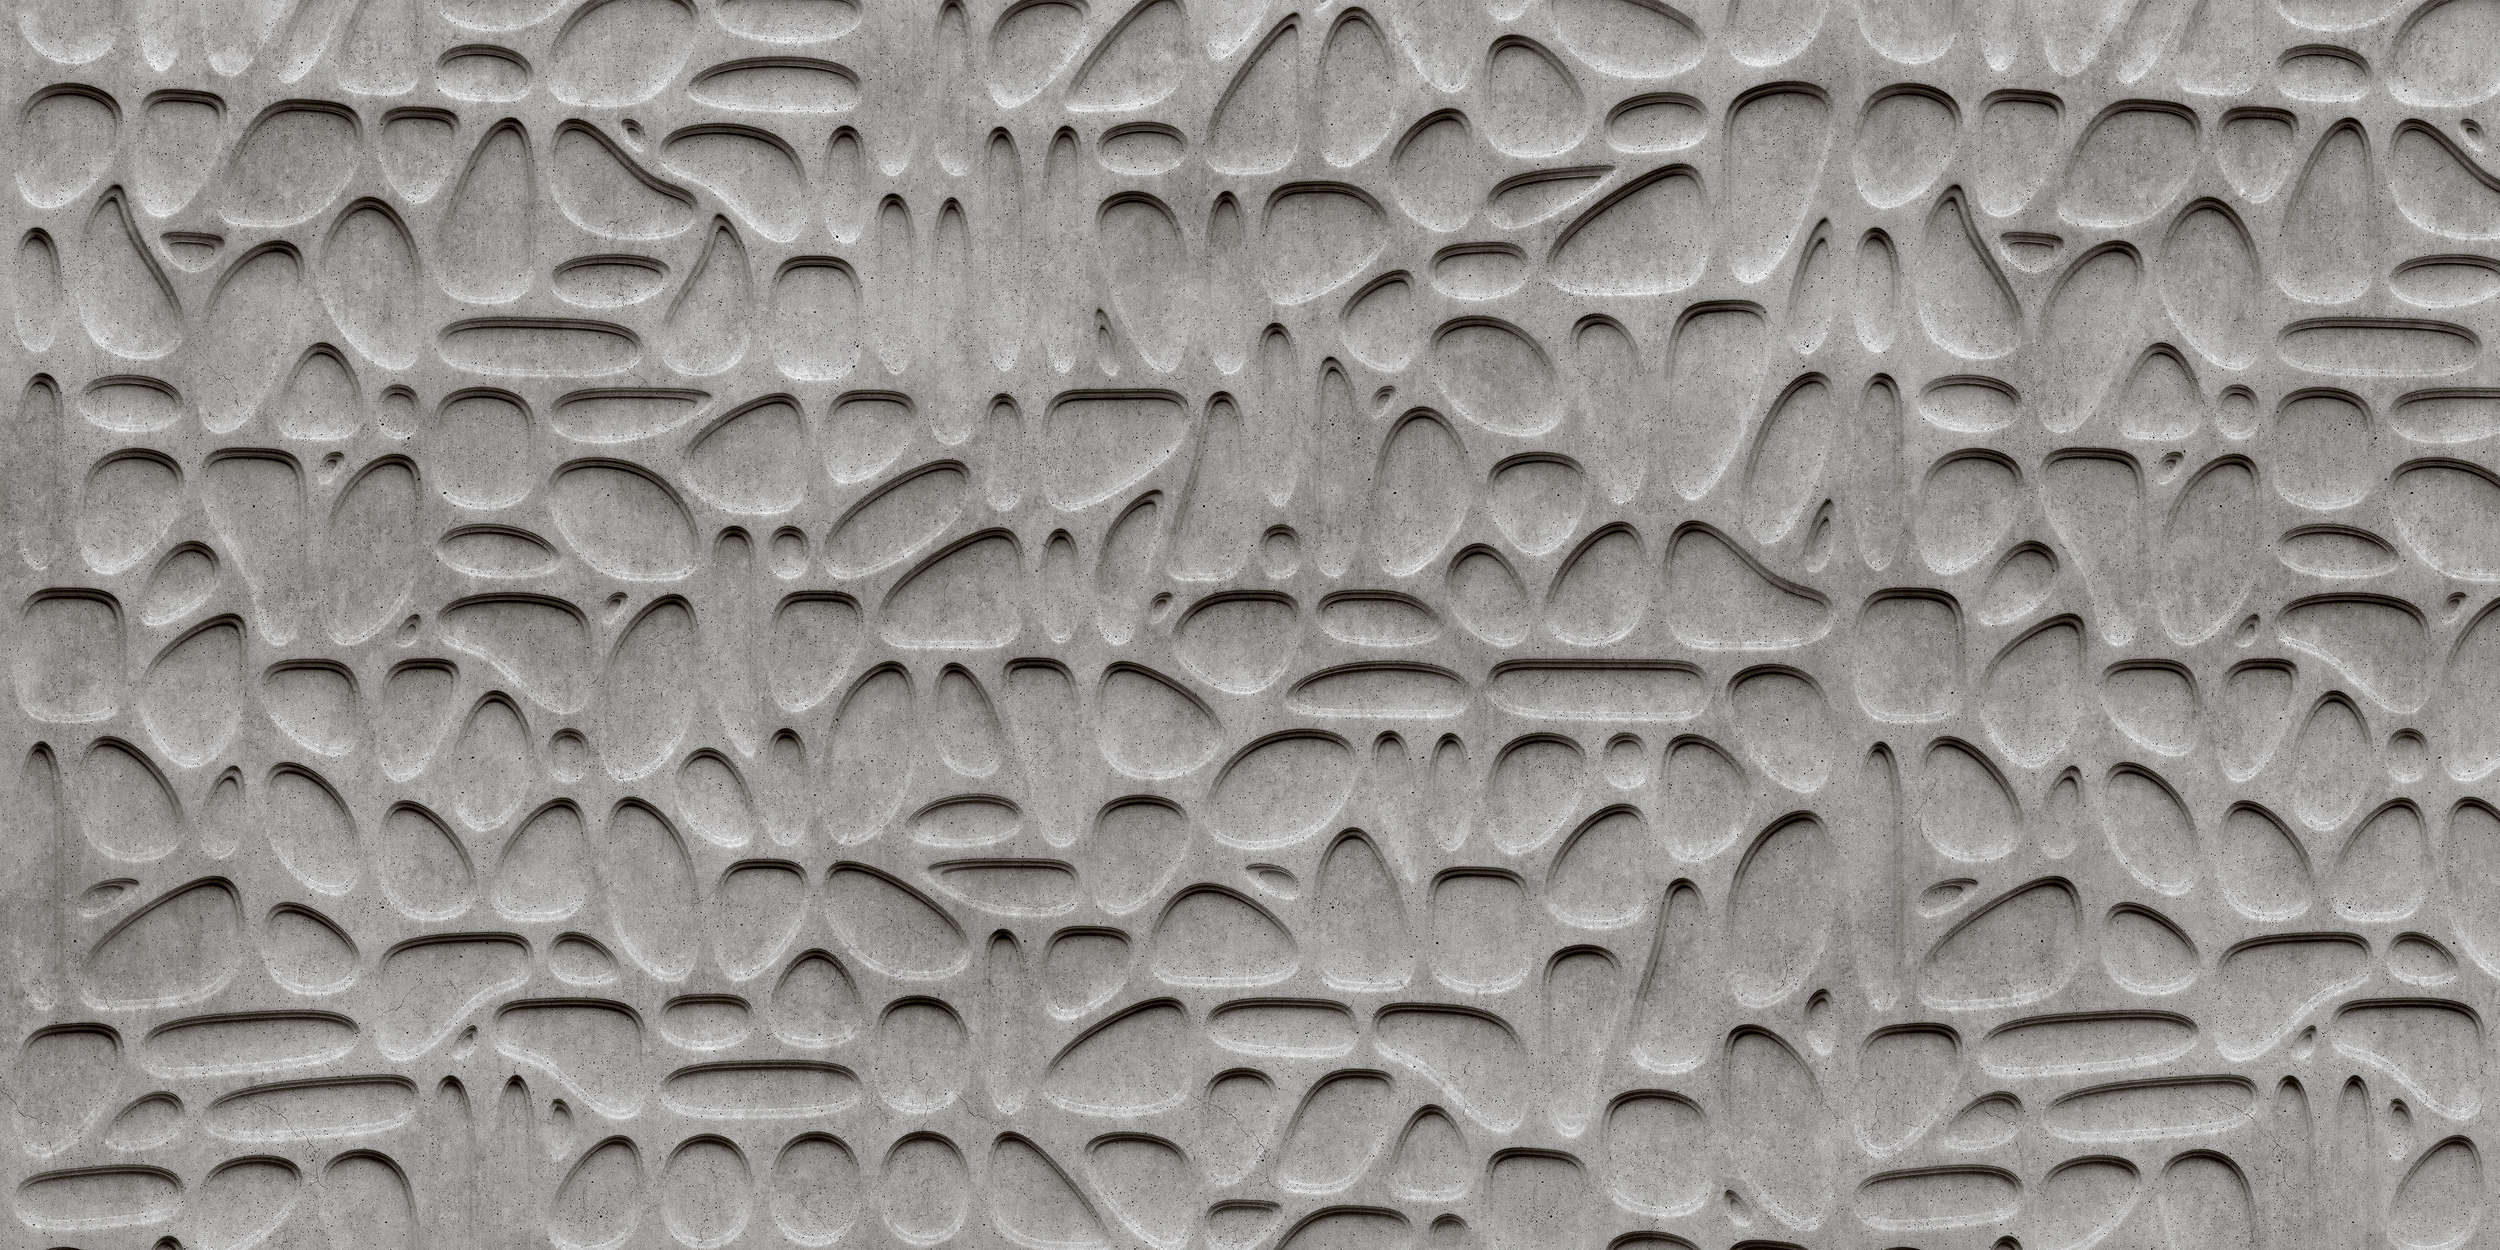             Maze 1 - Carta da parati a bolle di cemento 3D - Grigio, nero e liscio opaco
        